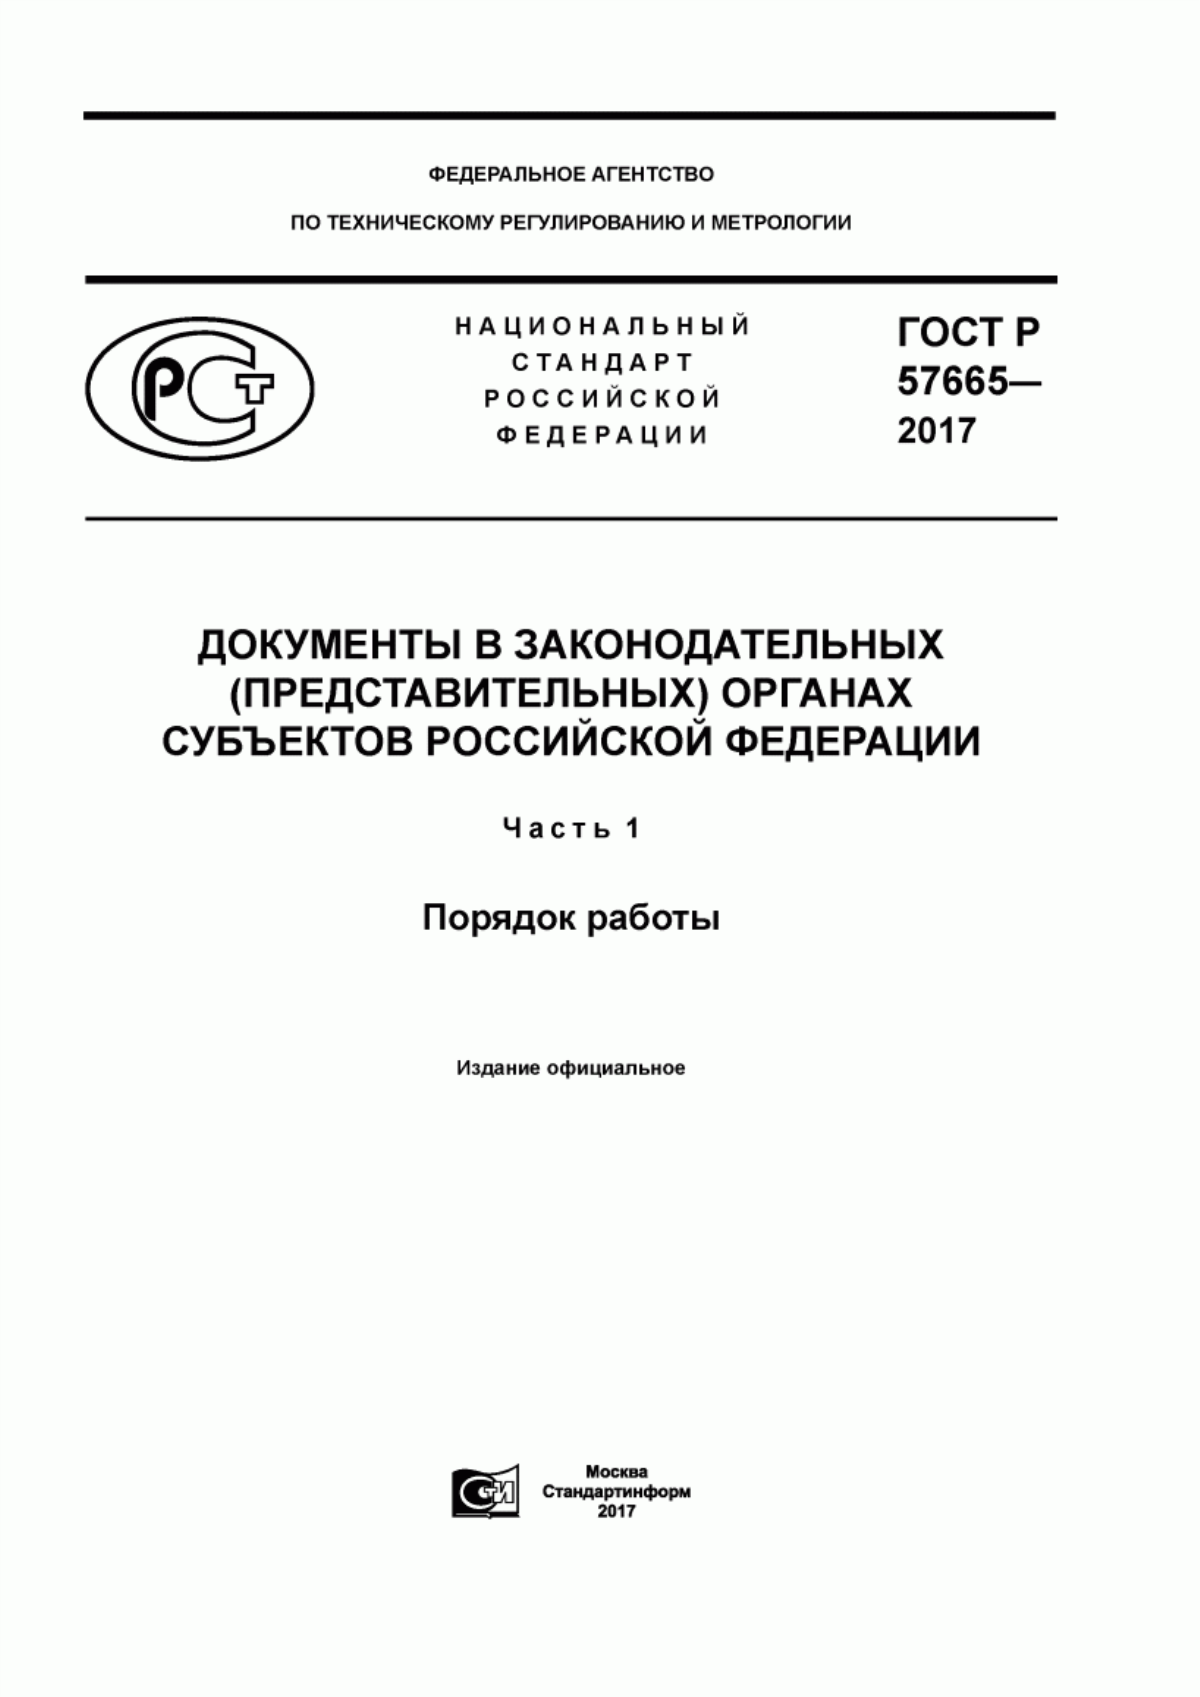 ГОСТ Р 57665-2017 Документы в законодательных (представительных) органах субъектов Российской Федерации. Часть 1. Порядок работы